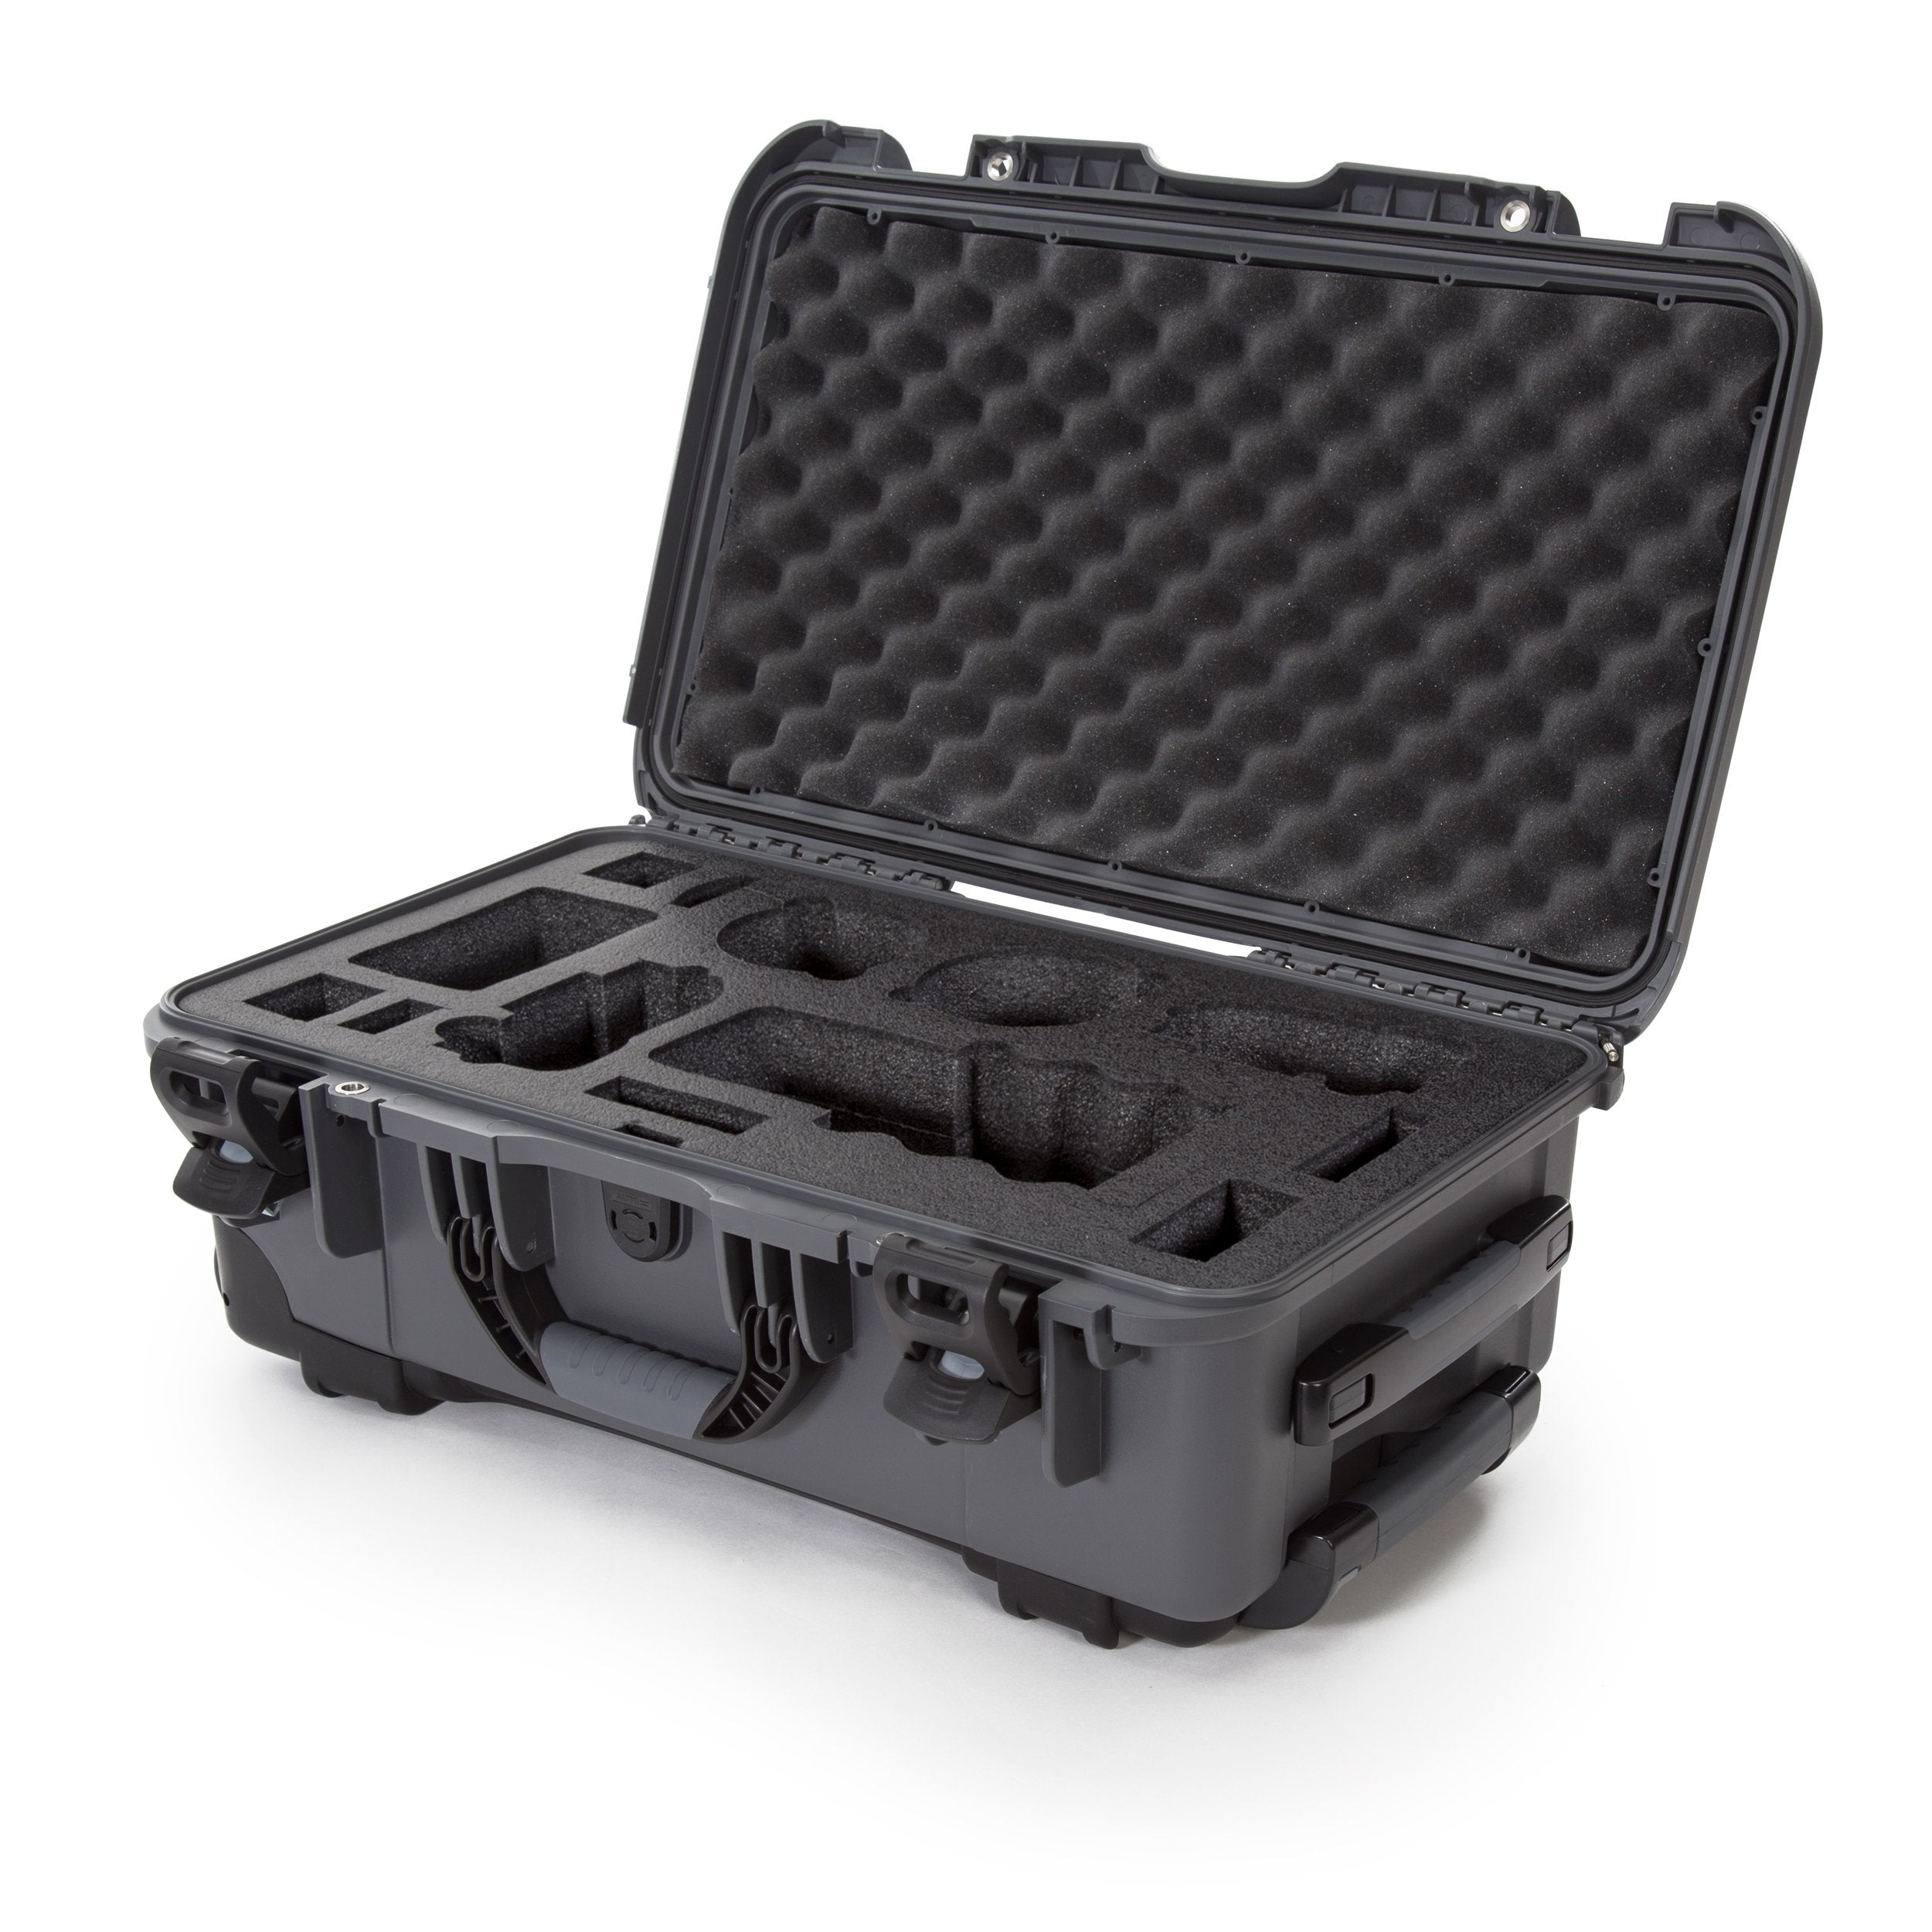 nanuk 933 dji drone waterproof hard case with custom foam insert for the phantom 4 pro 4 pro 4 pro 2 0 4 rtk olive